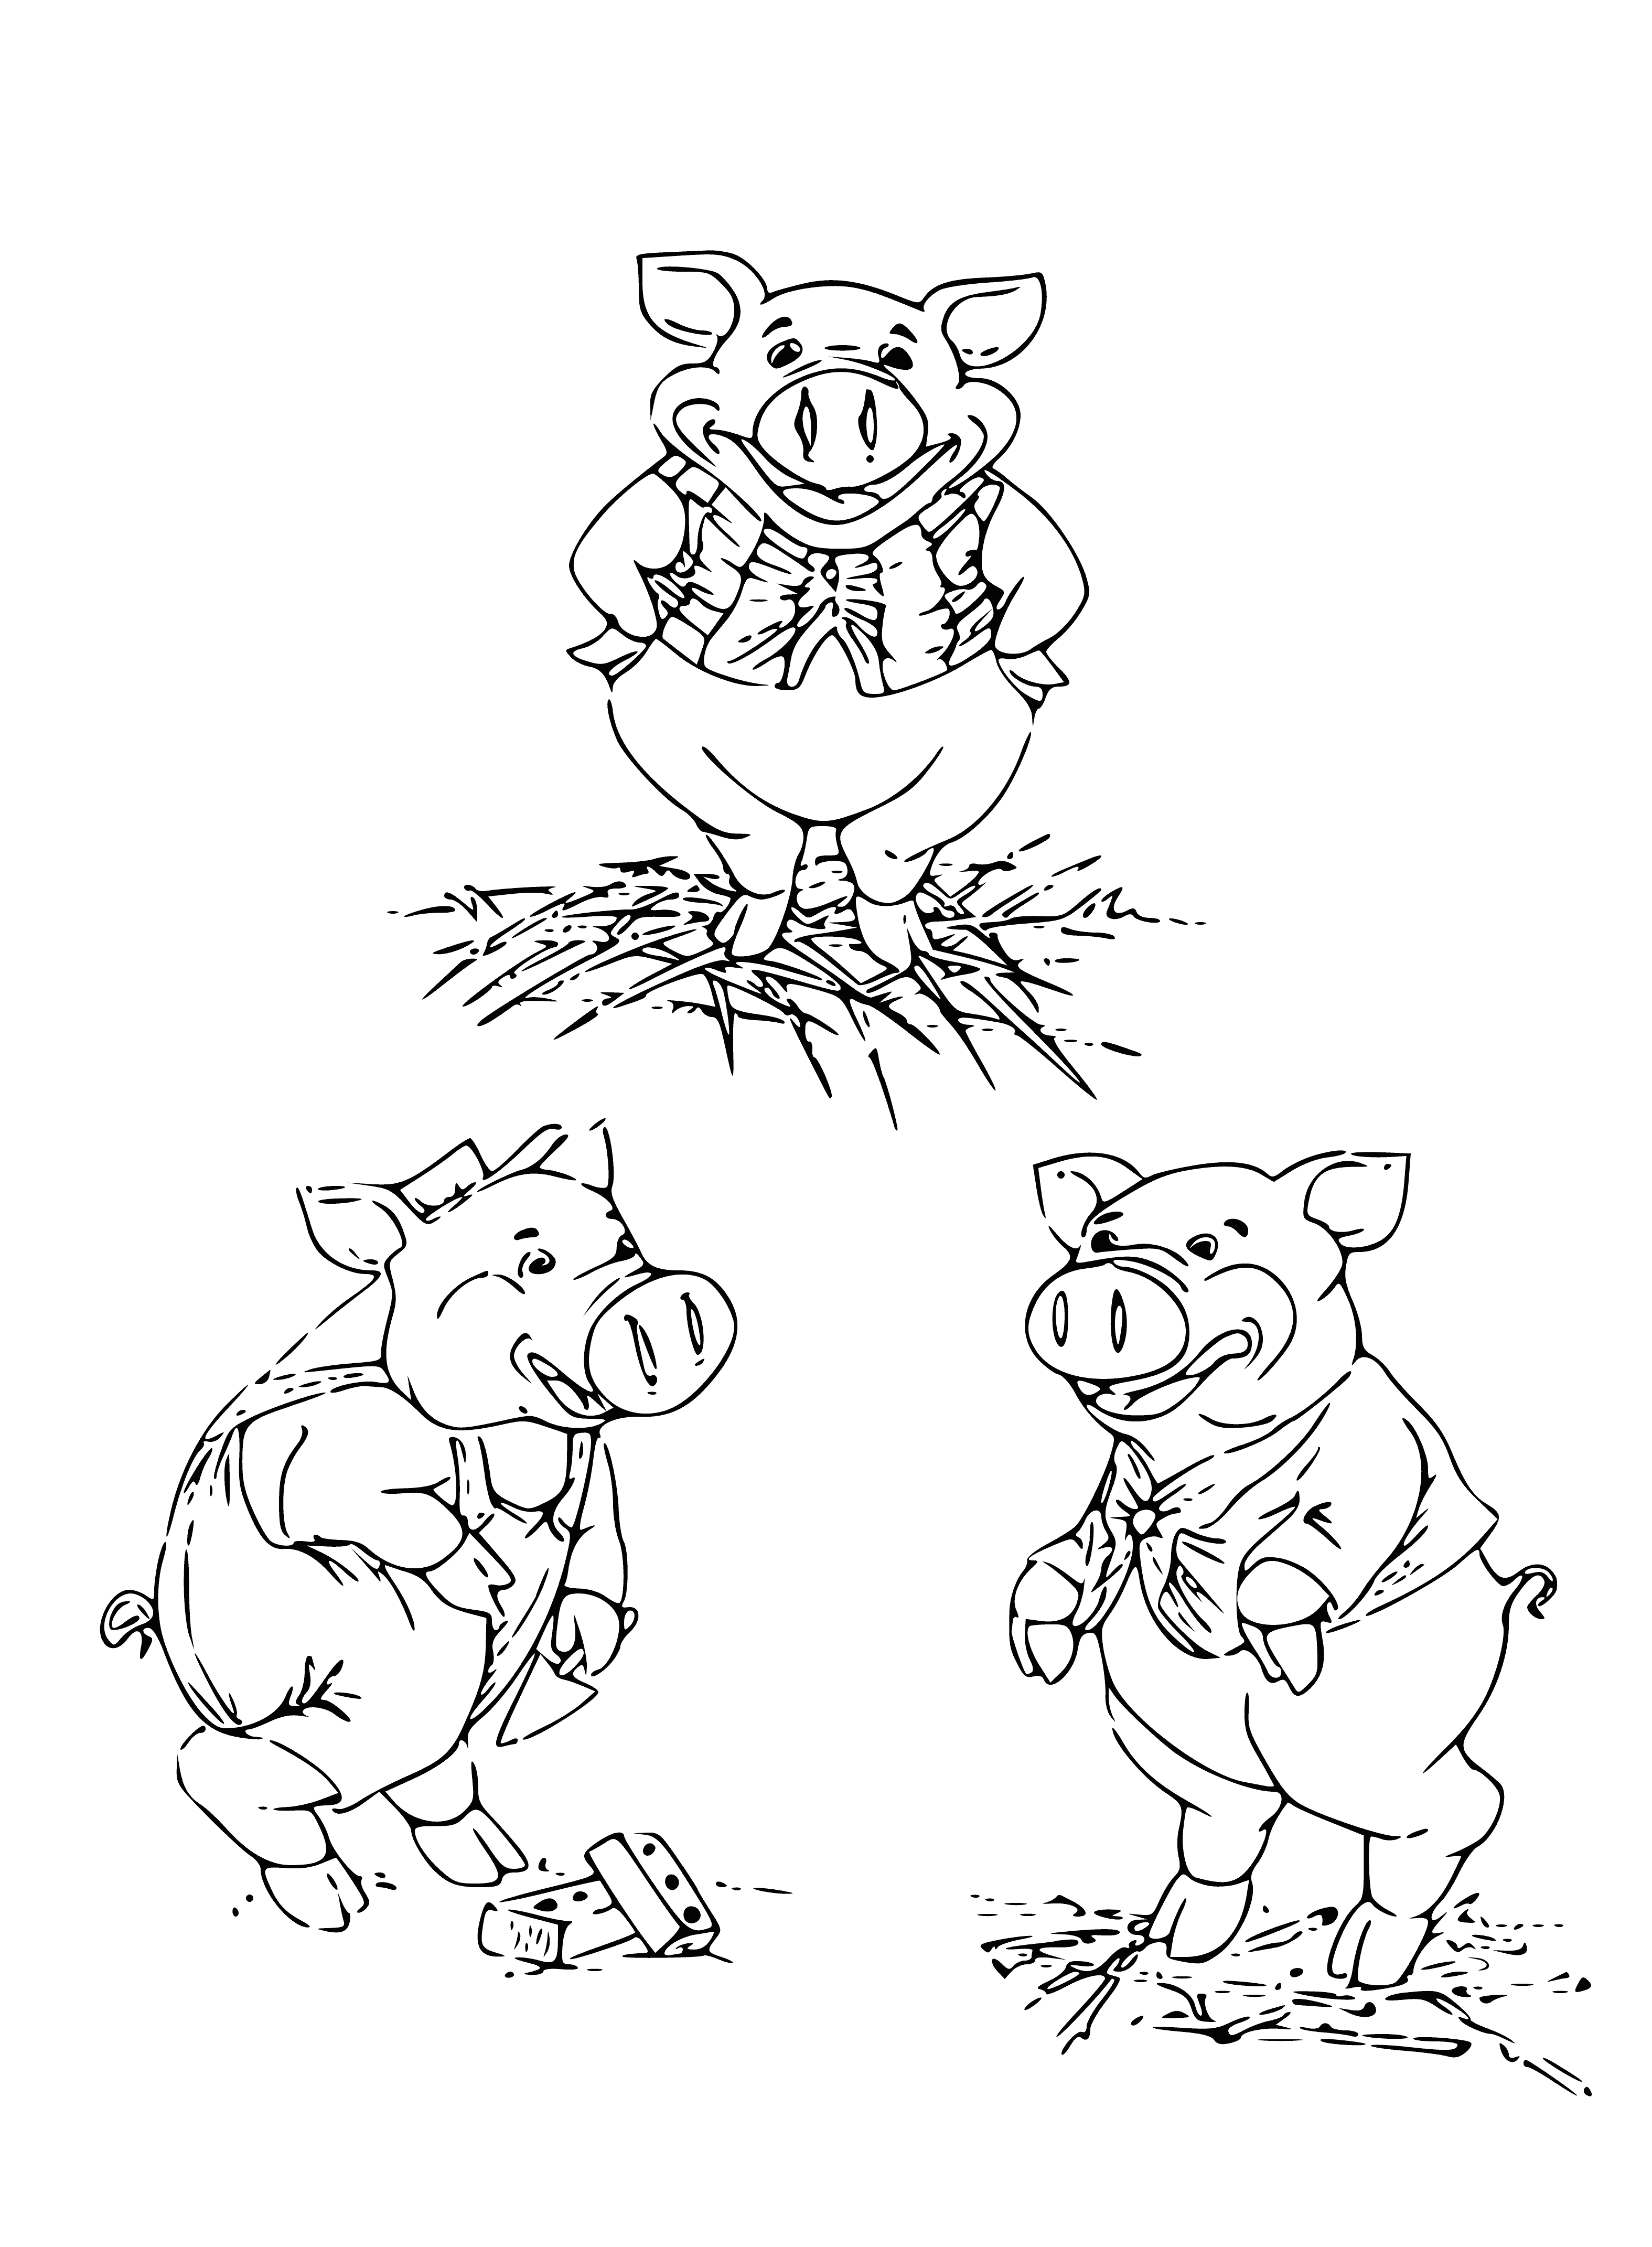 üç domuz boyama sayfası